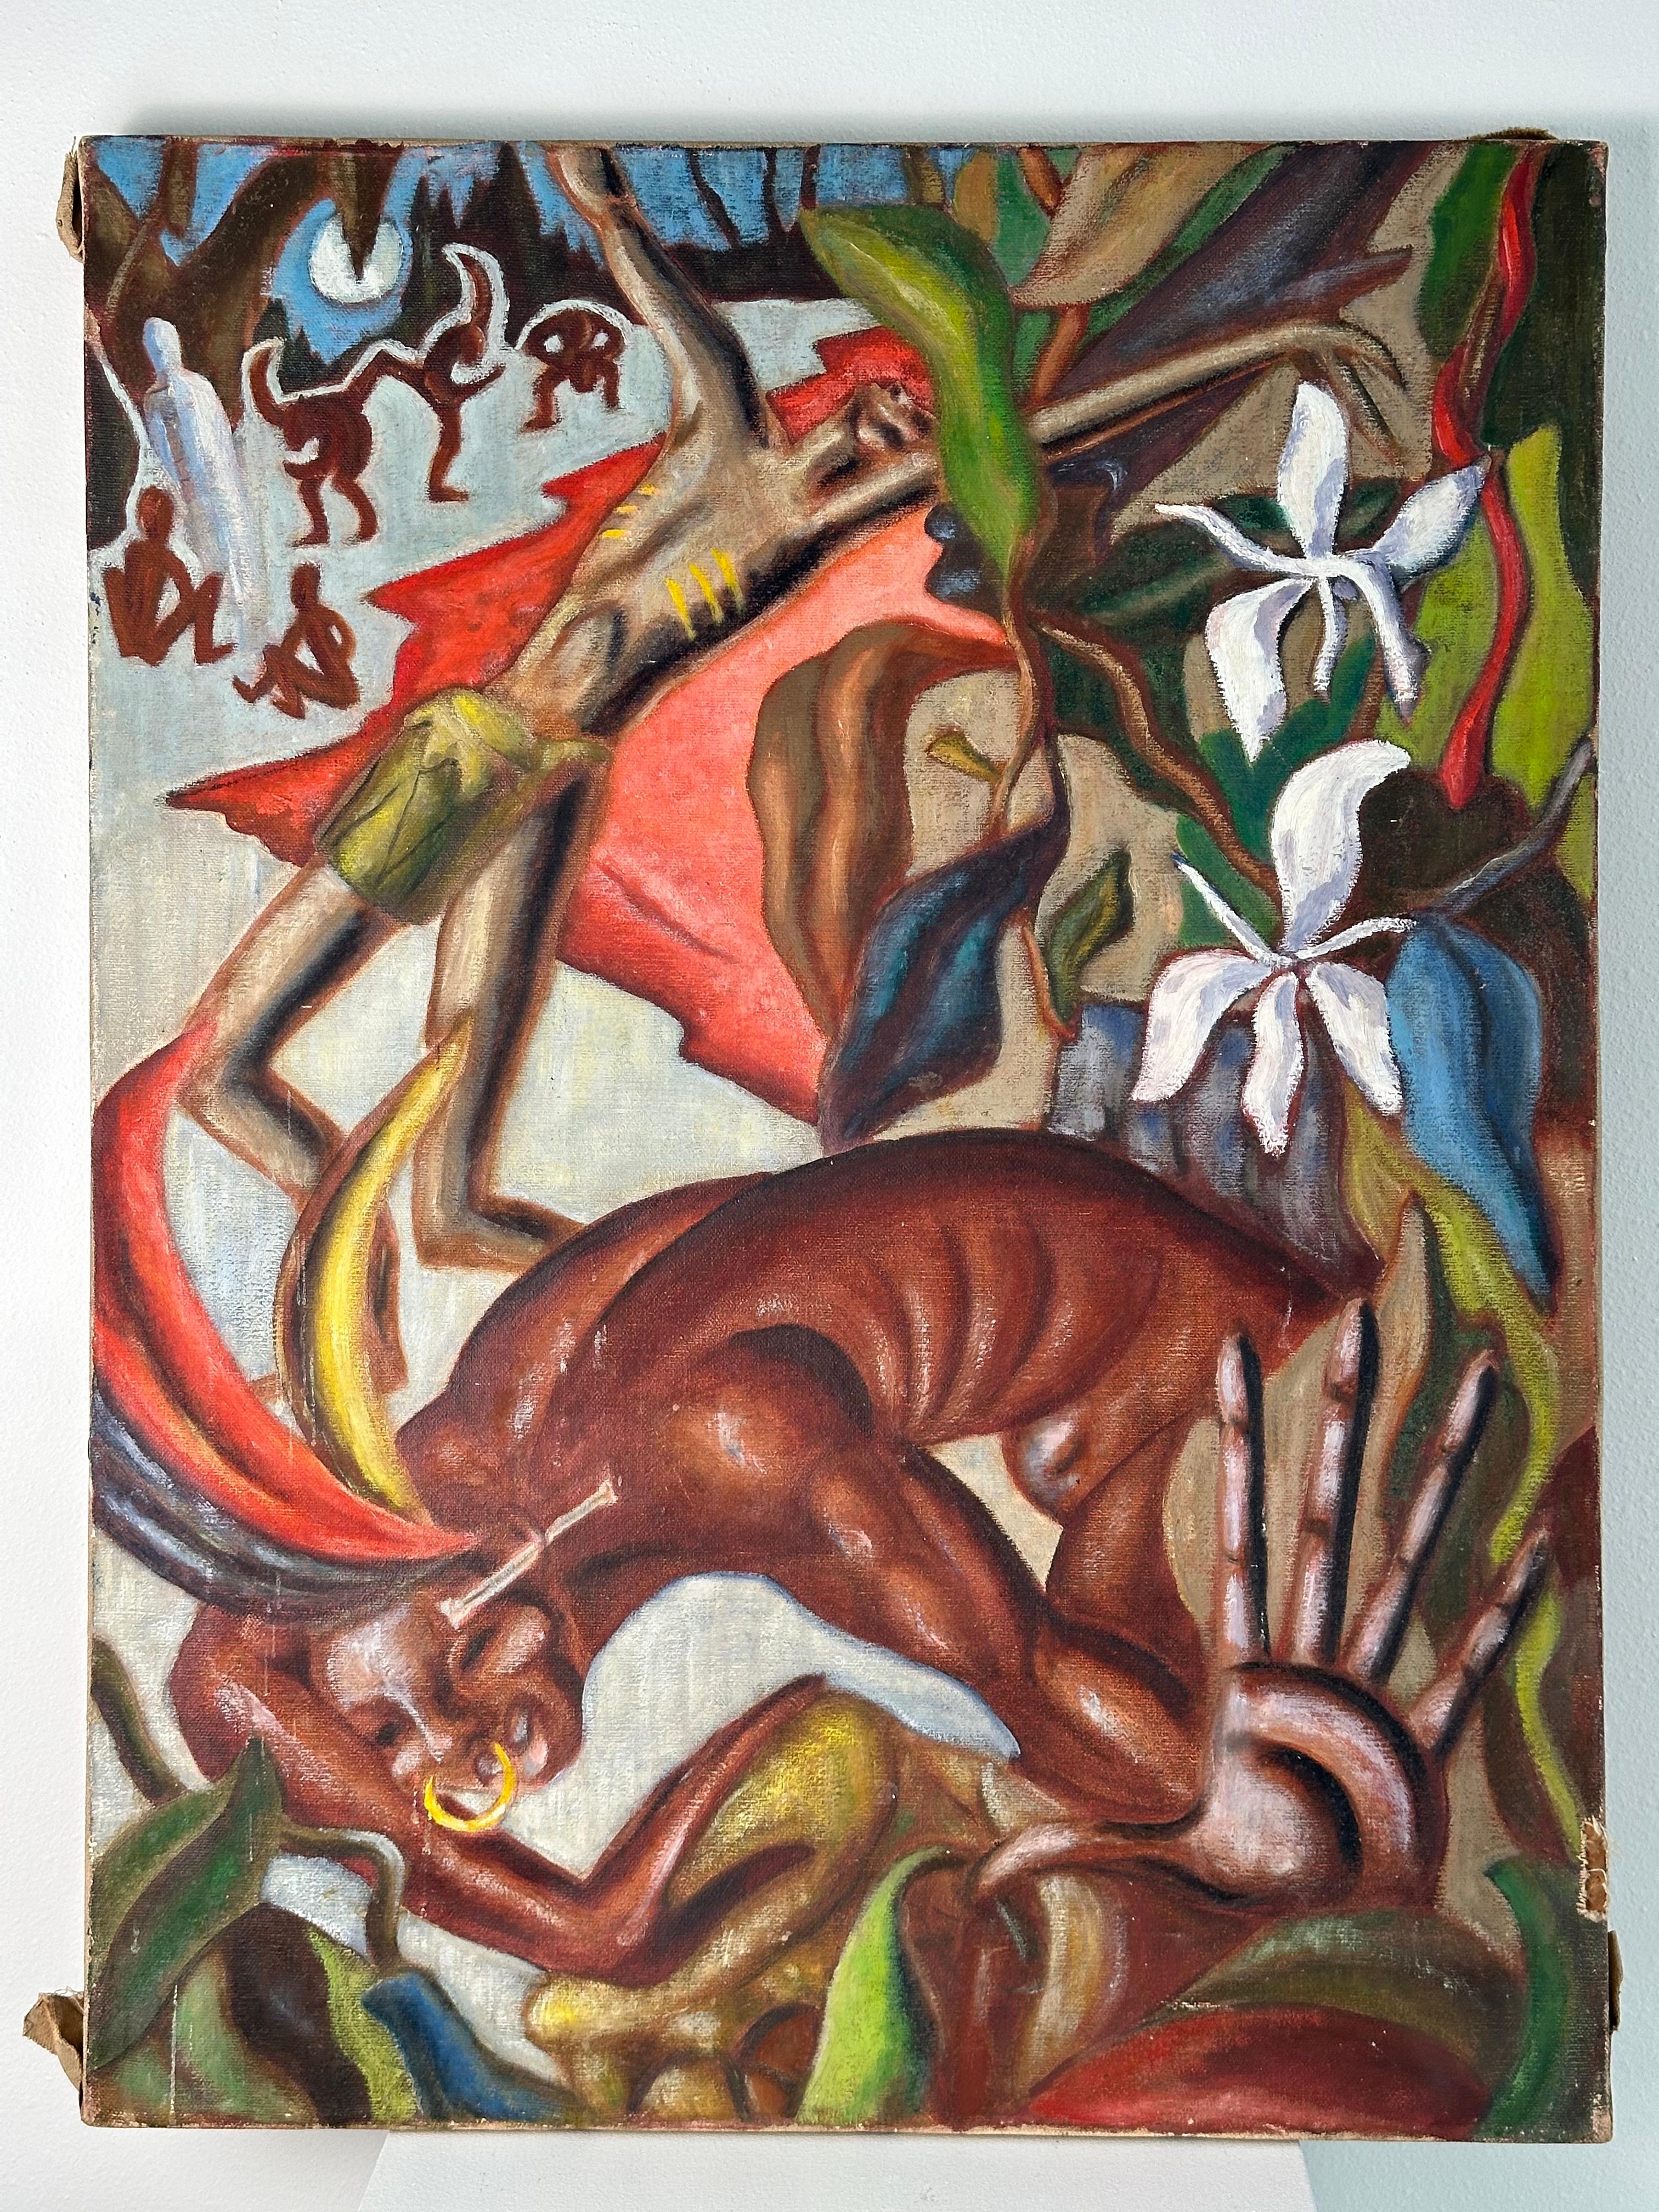 Geisterbeschwörung (Dschungeltrommeln) – Painting von Thomas Hart Benton